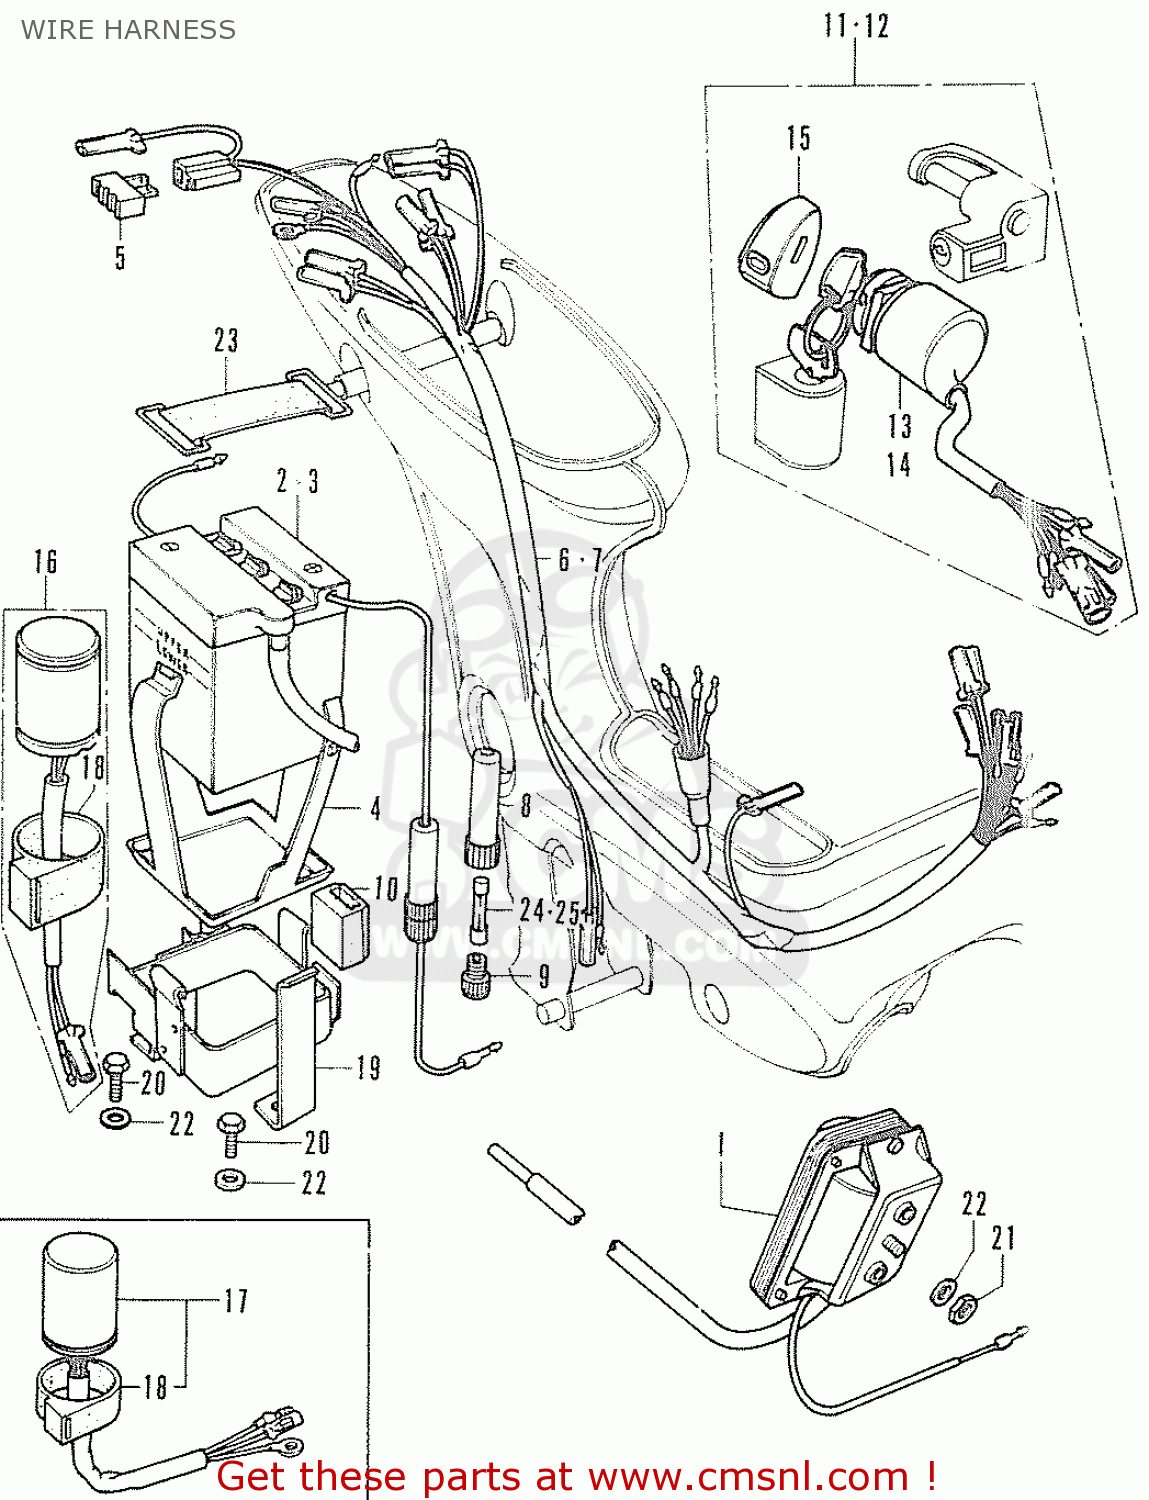 Honda cf70 chaly parts